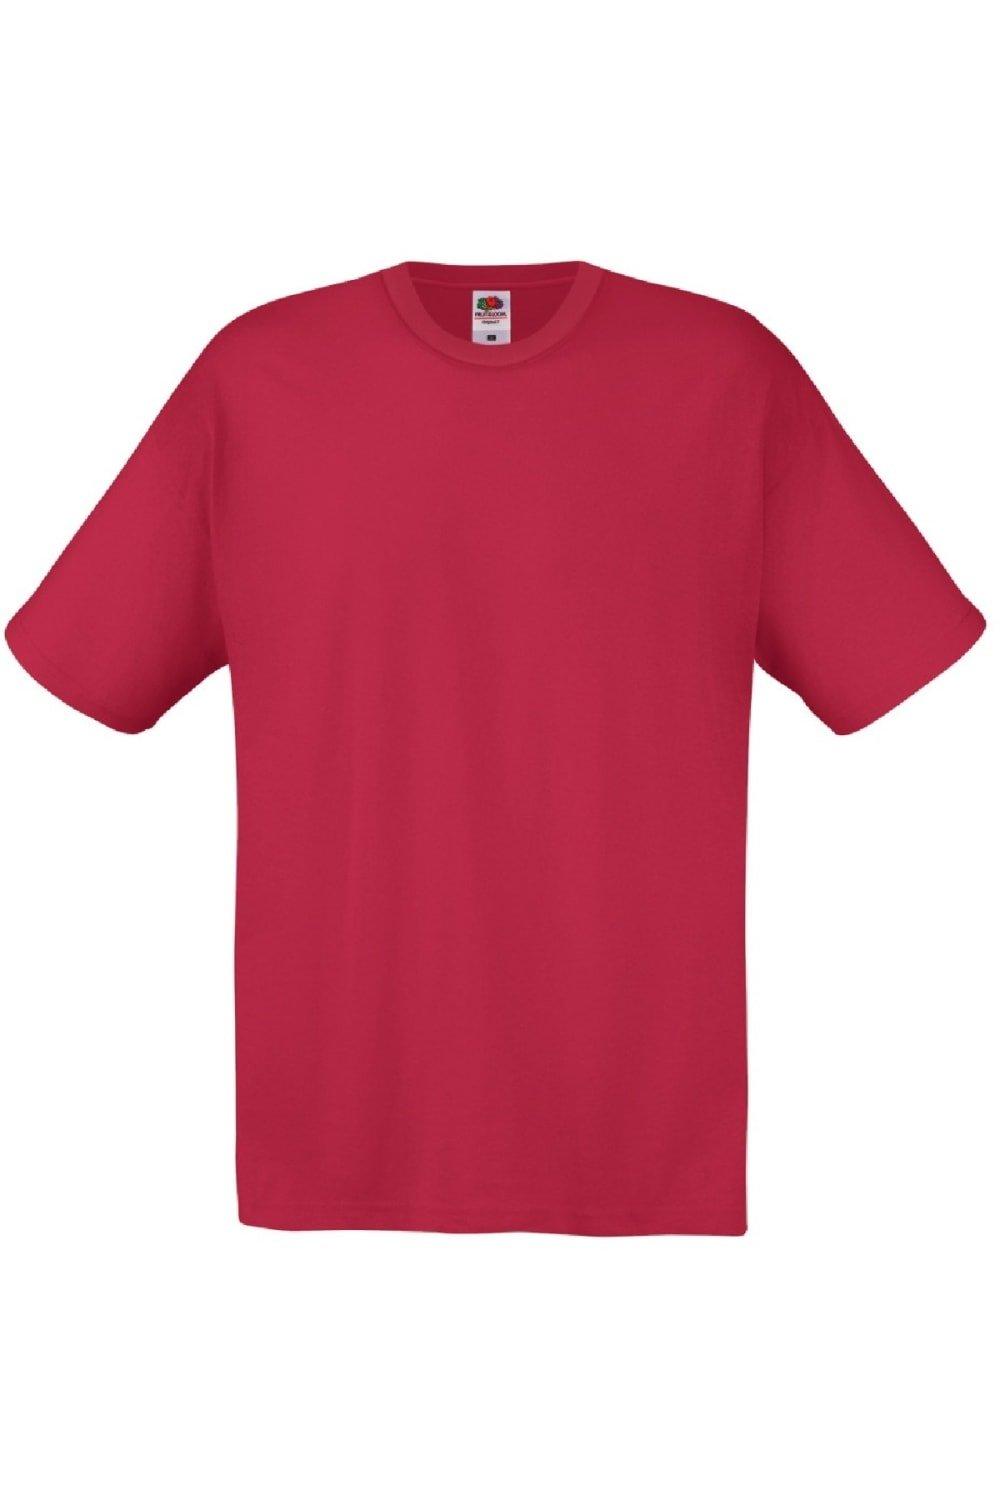 Оригинальная полноразмерная футболка Screen Stars с короткими рукавами Fruit of the Loom, красный